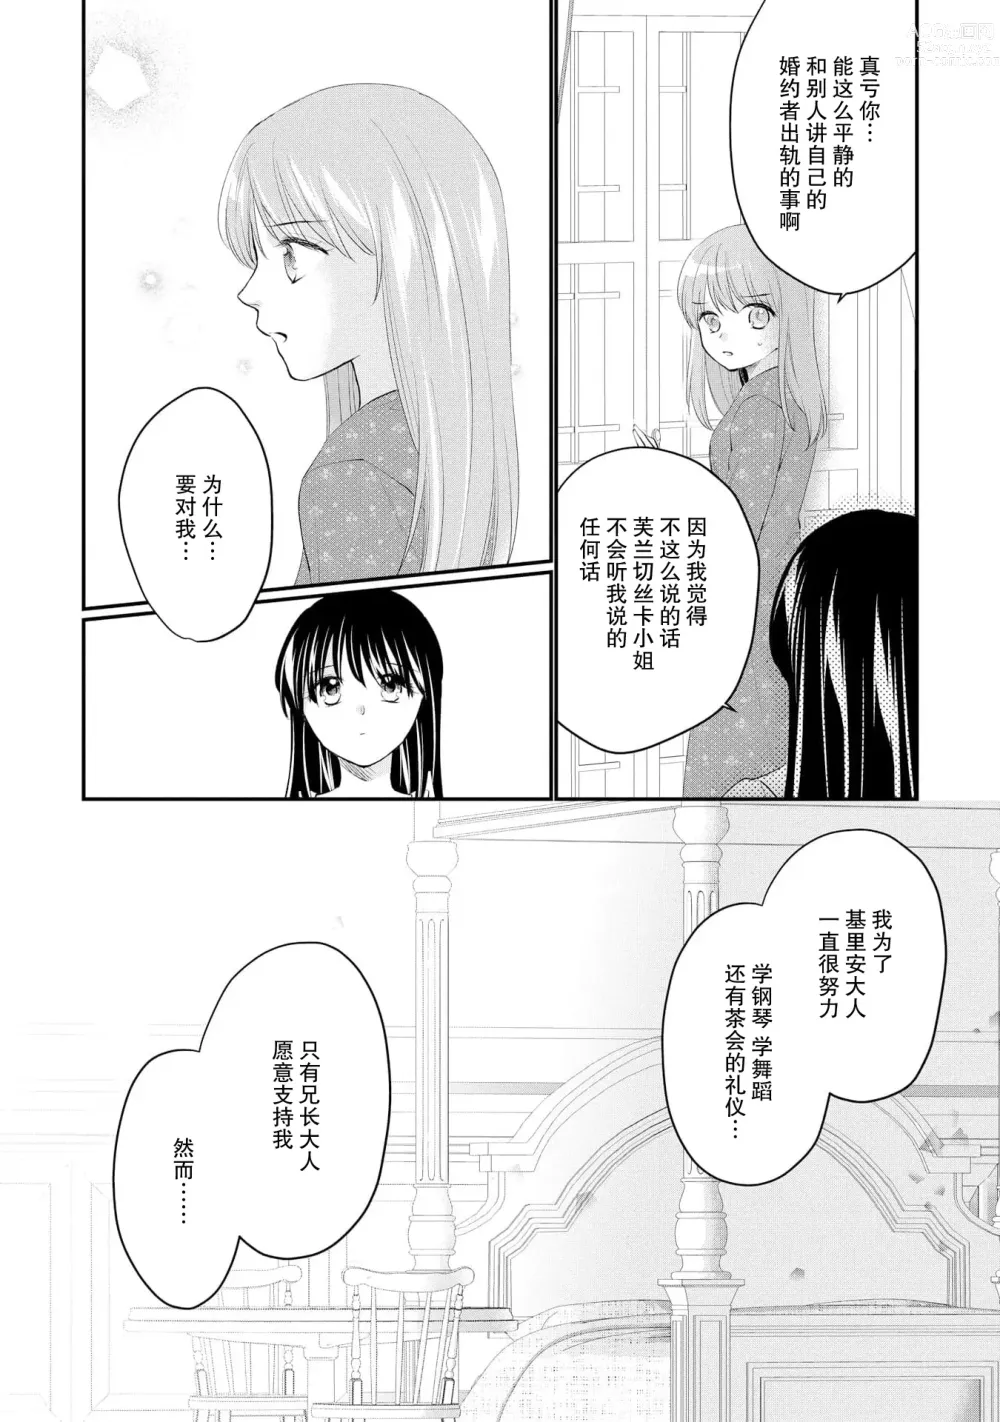 Page 285 of manga 新婚约者超宠我 1-11